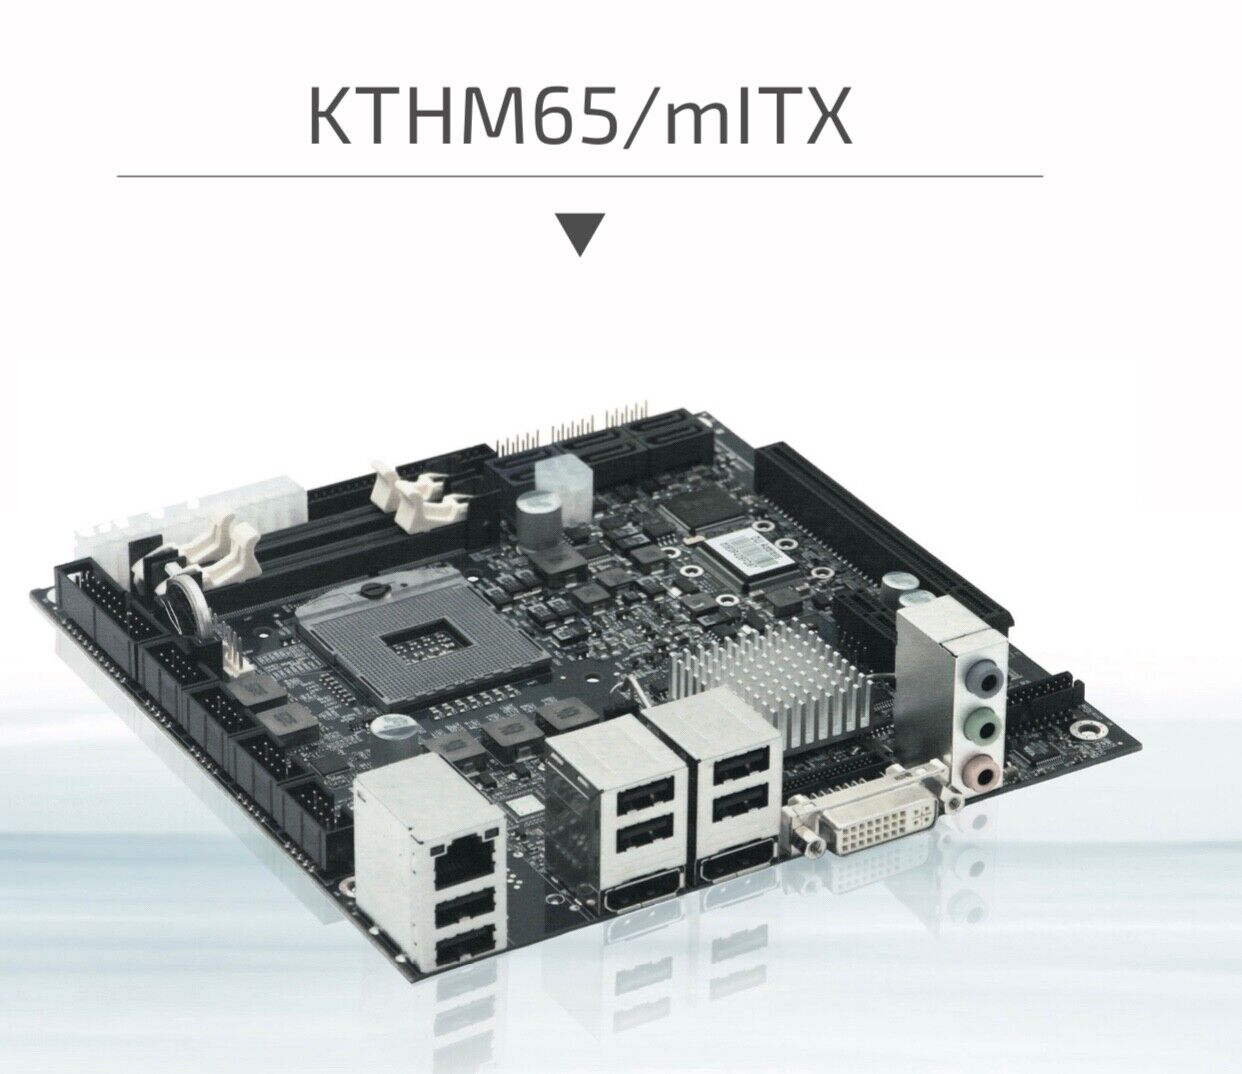 Kontron KTHM65/mITX, Intel Celeron, 4GB RAM, 1GB VRAM, Power supply, 120 GB SSD.